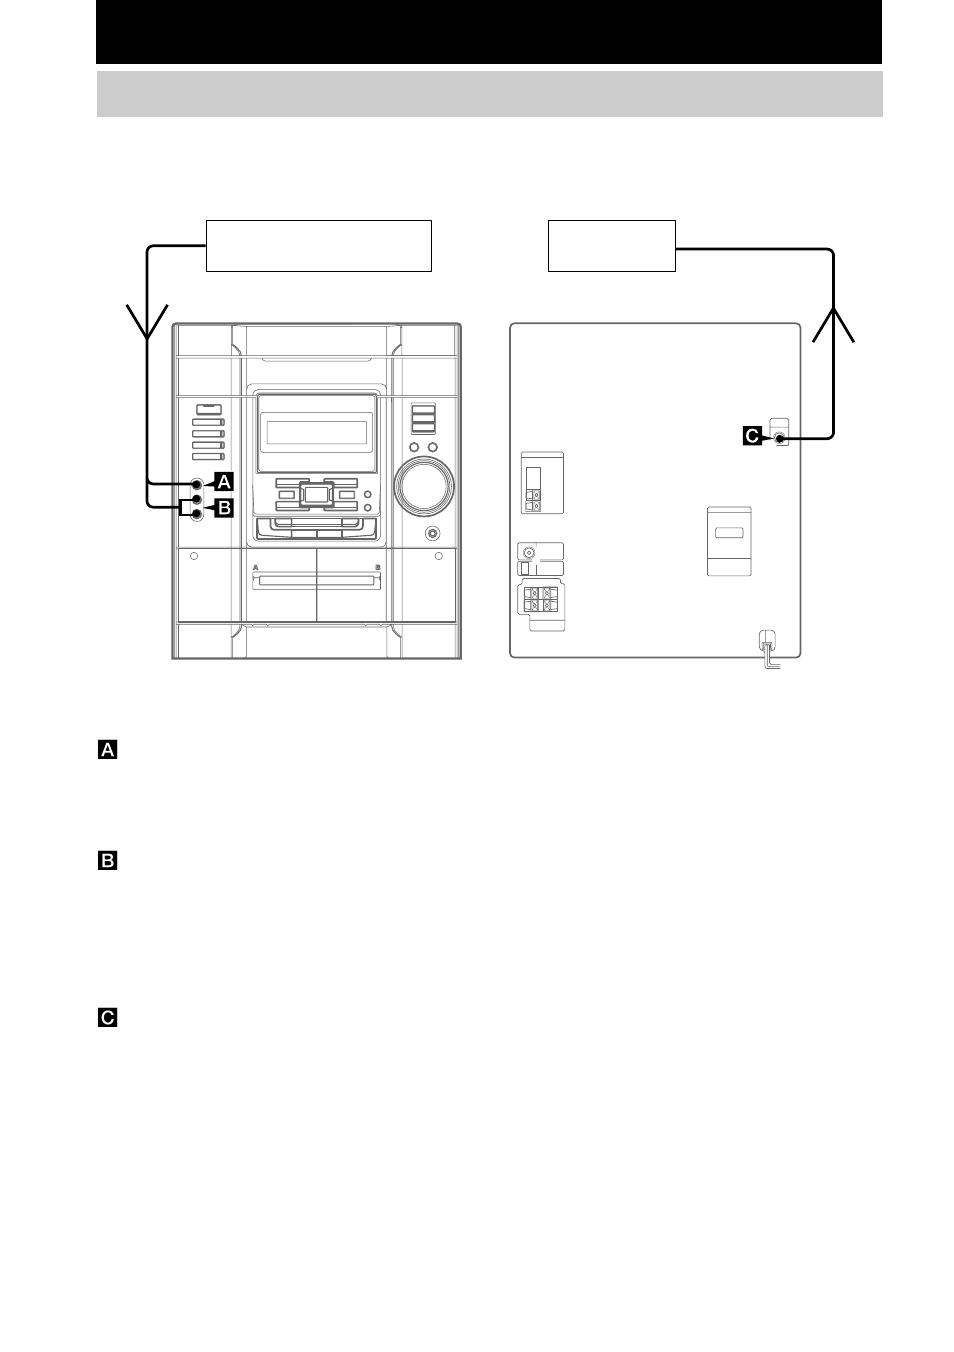 Componentes opcionales, Conexión de una consola de videojuego | Sony MHC-GX20 Manual del usuario | Página 24 / 32